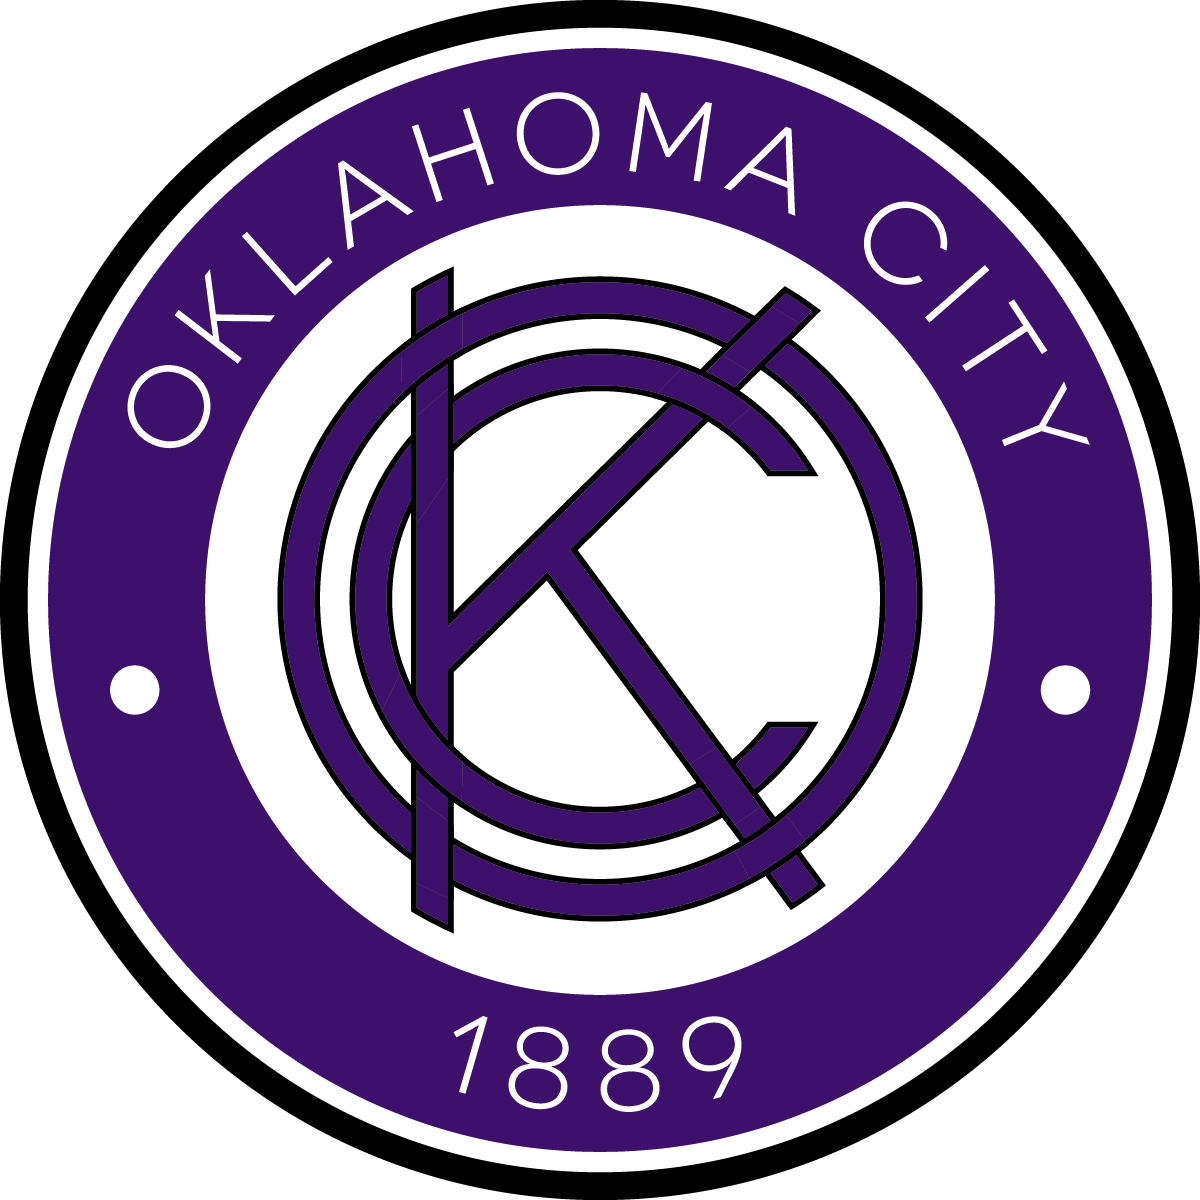 OKC 1889 FC